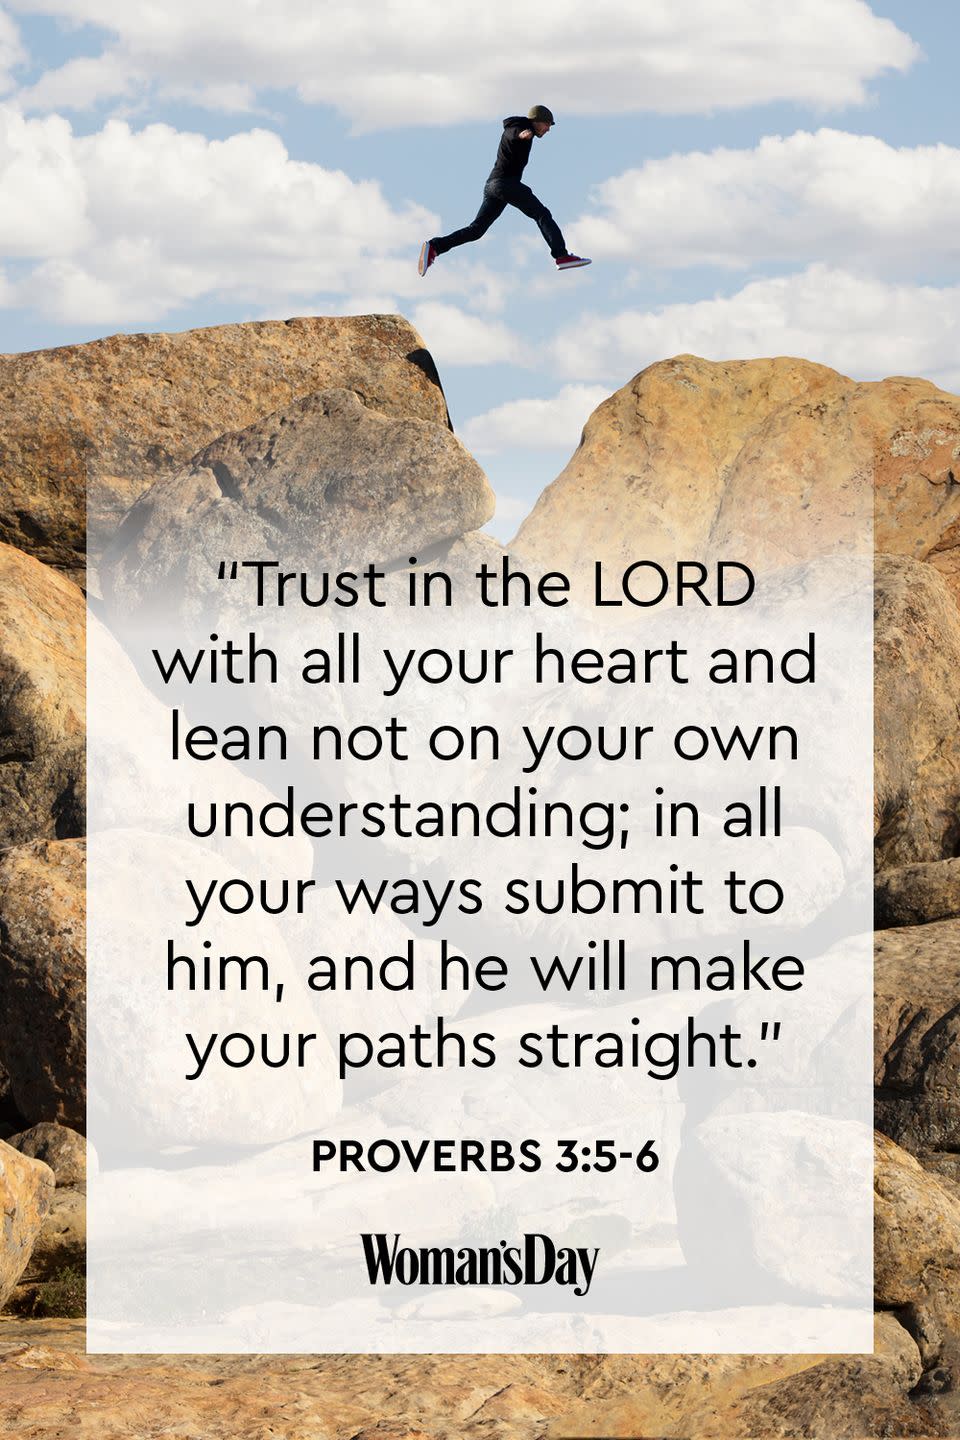 Proverbs 3:5-6